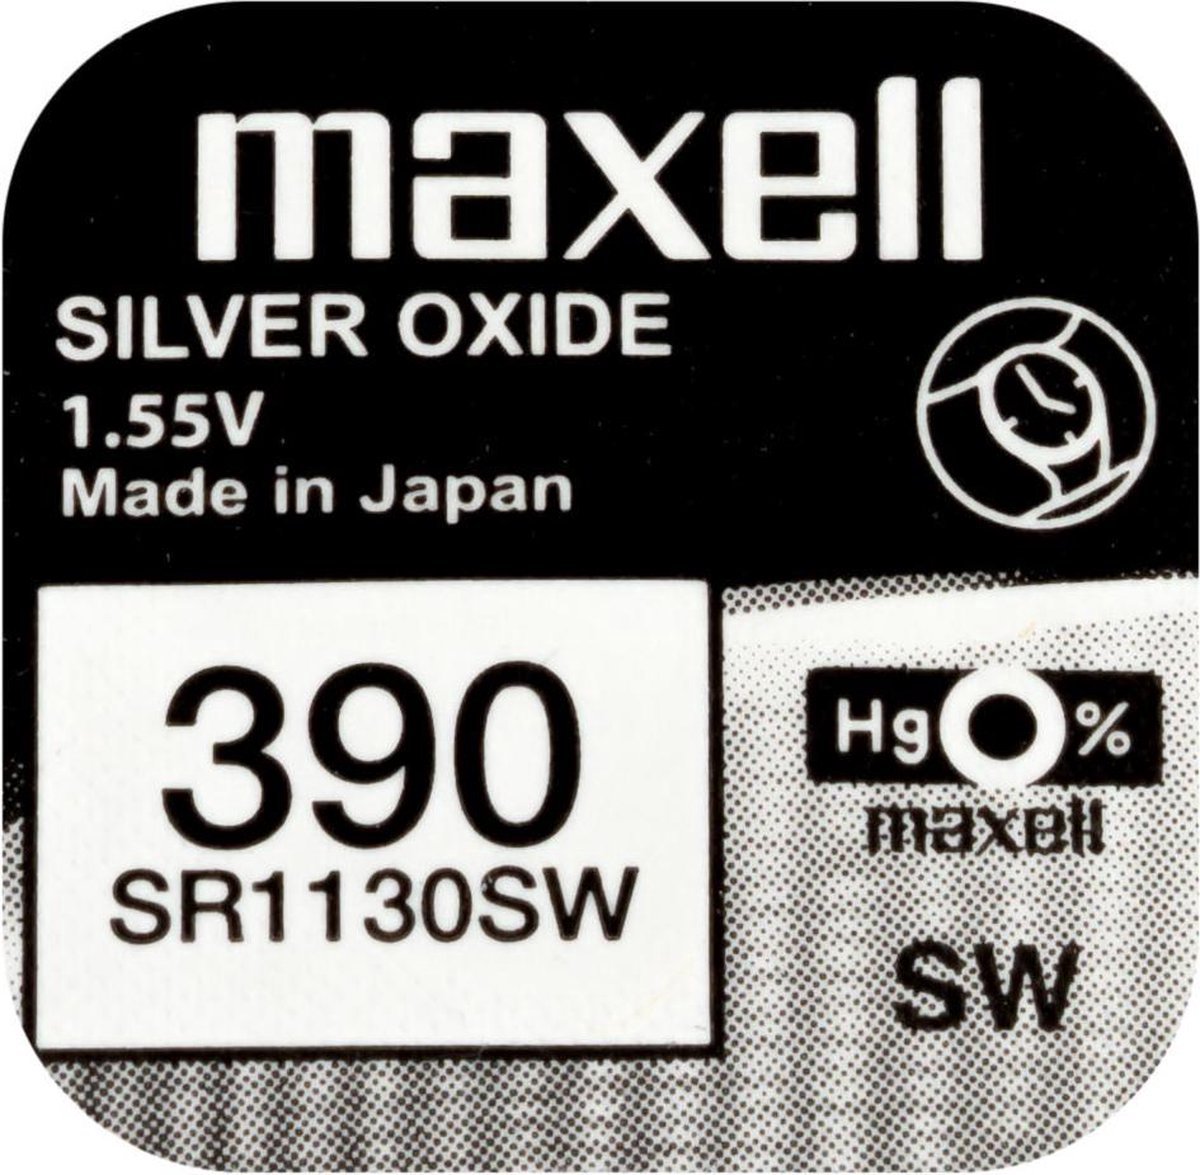 MAXELL - 390 / SR1130SW - Zilveroxide Knoopcel - horlogebatterij - 2 (twee) stuks